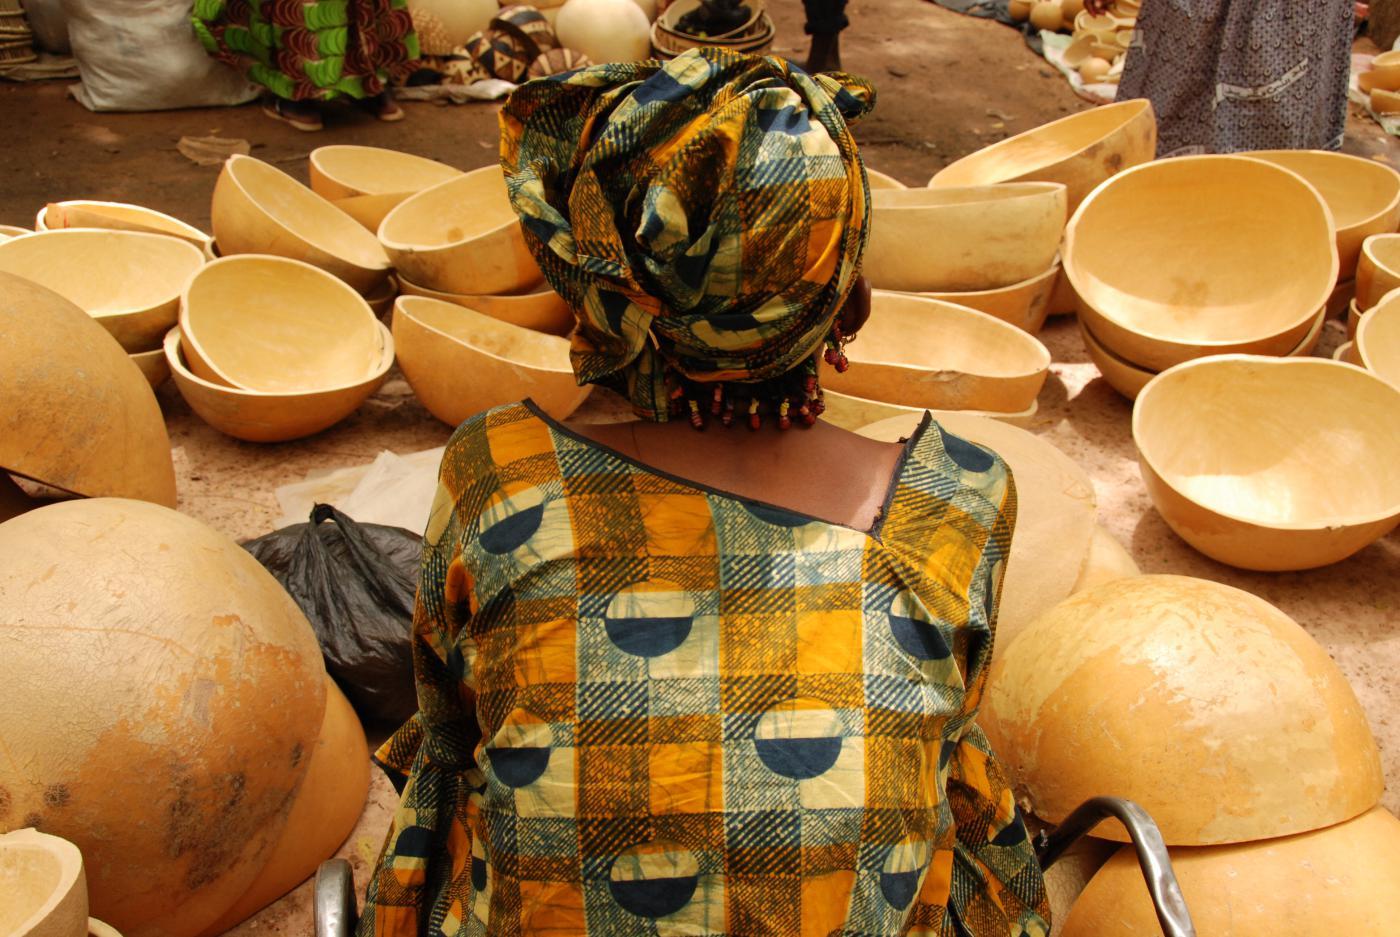 SAH - Mali-market-segou.jpg